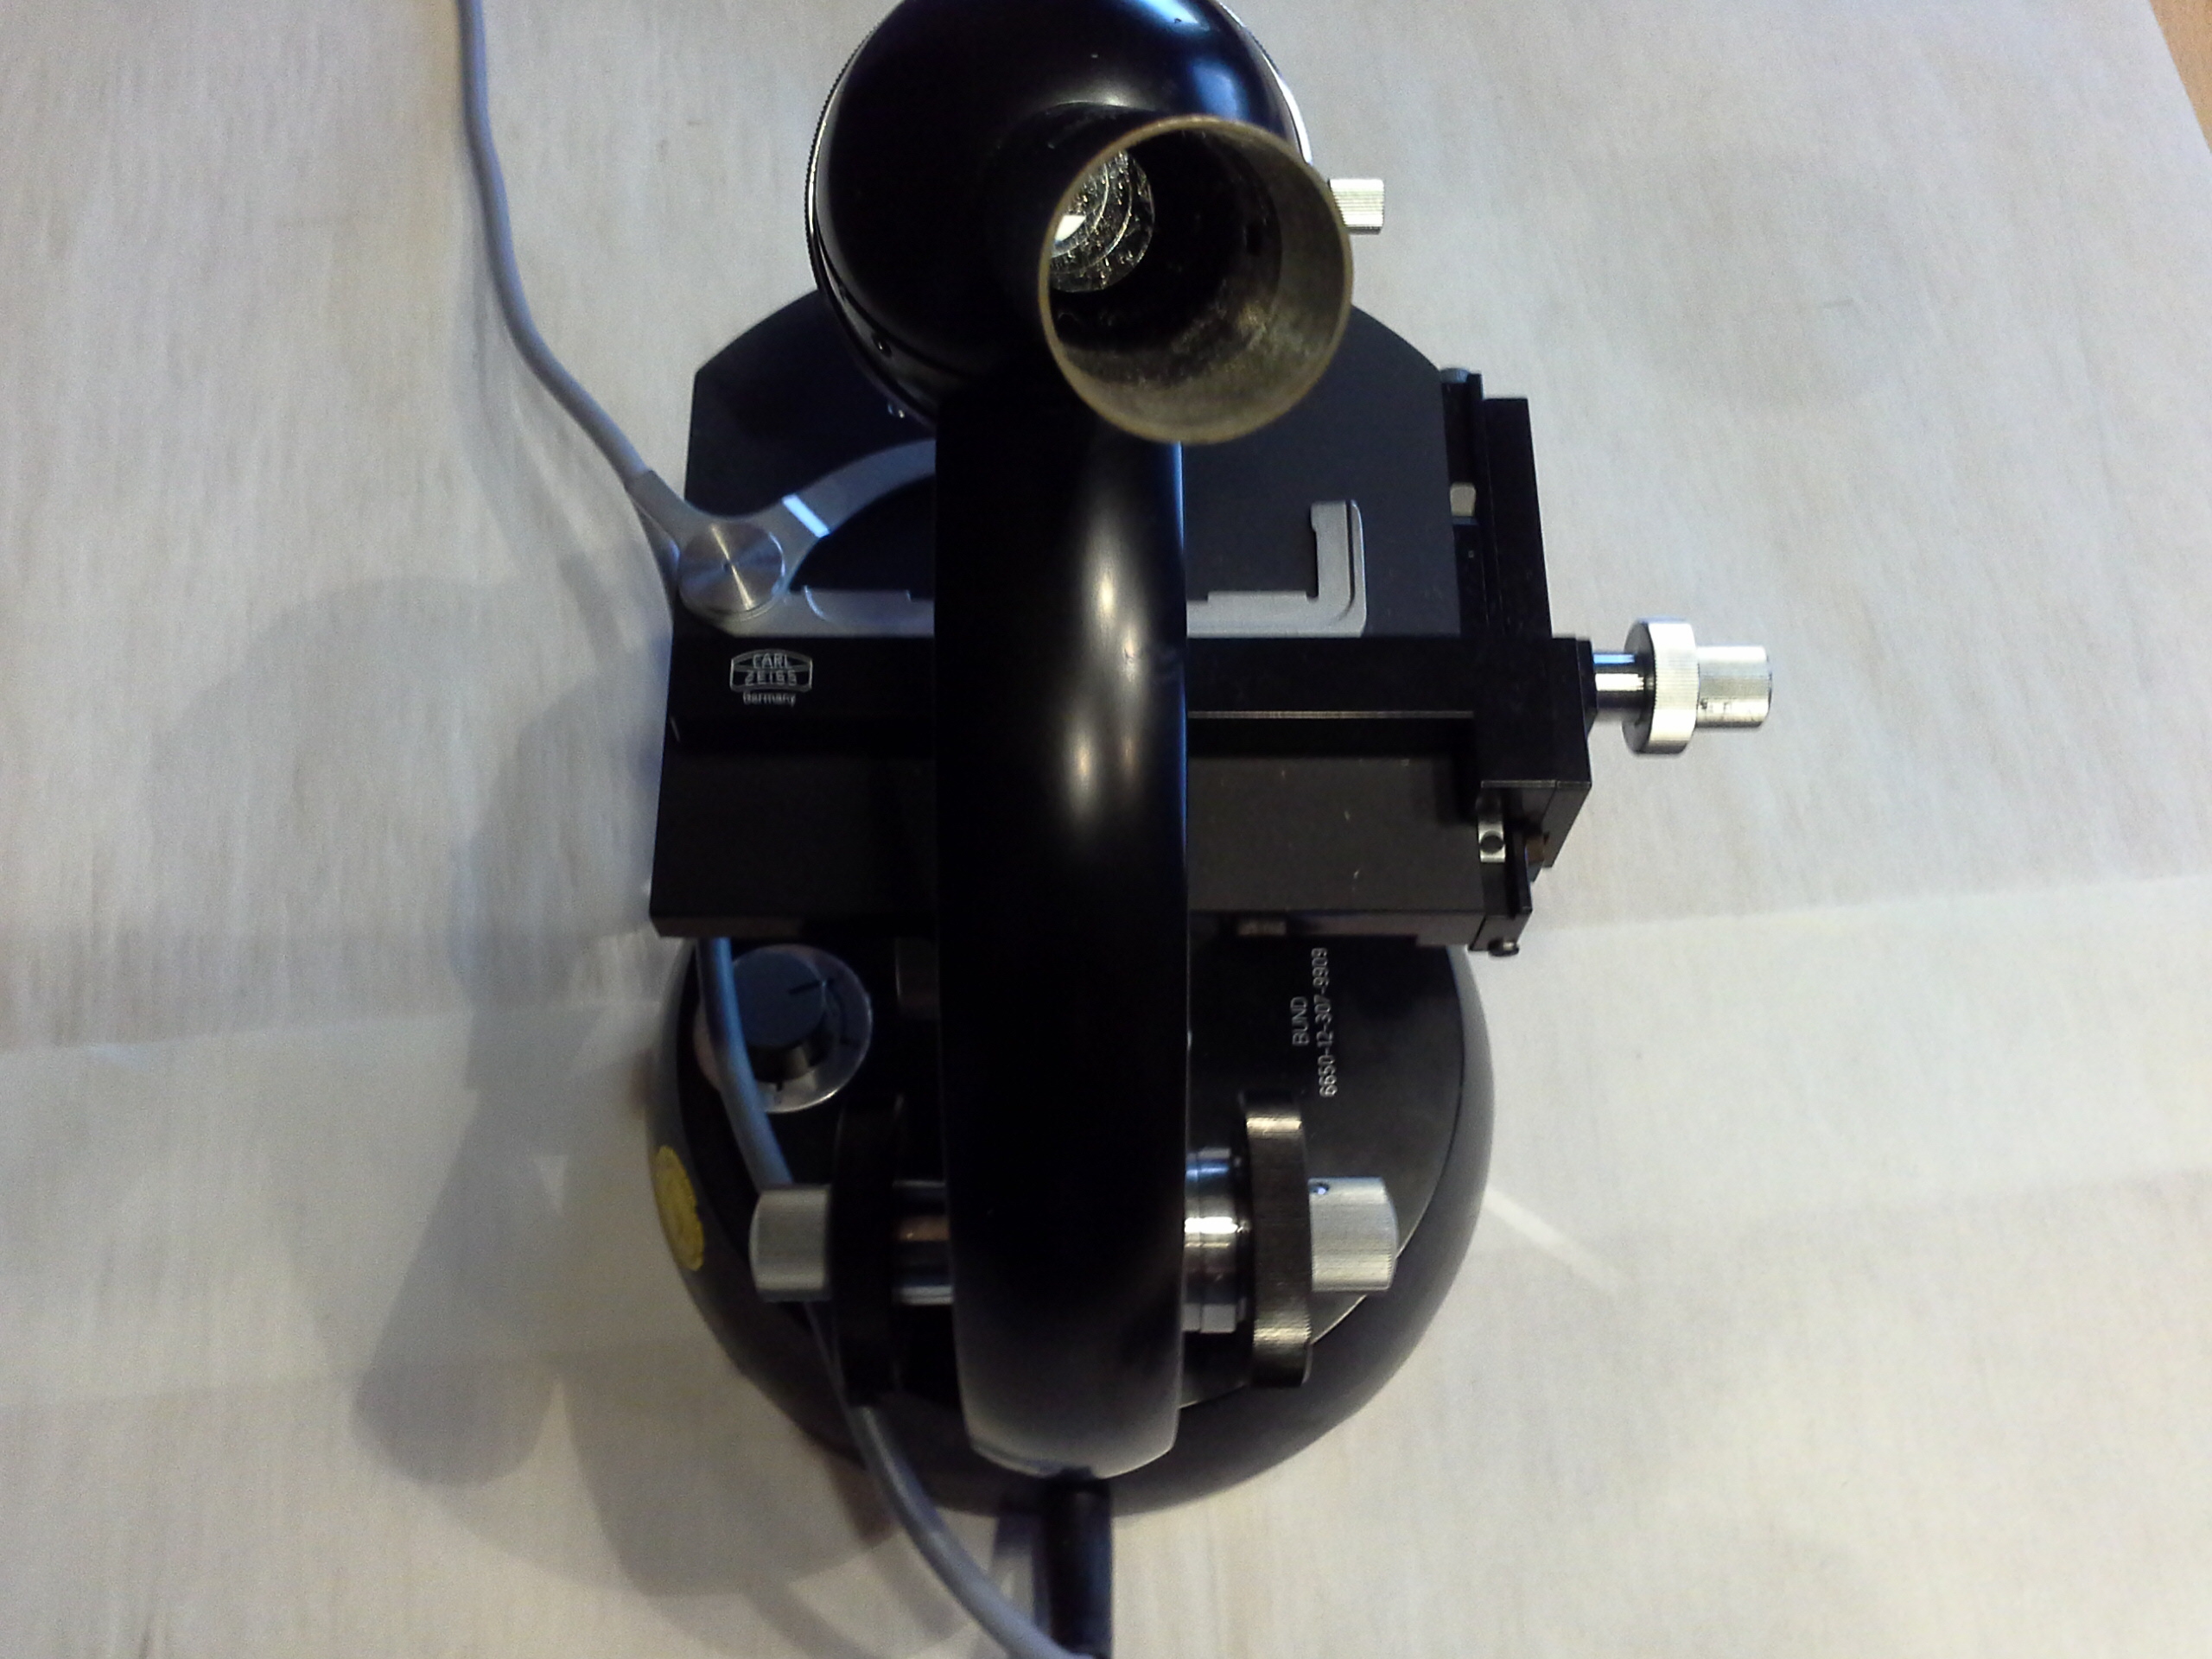 Carl Zeiss Mikroskop, optisch, monokular mit Einbauleuchte und Zubehör